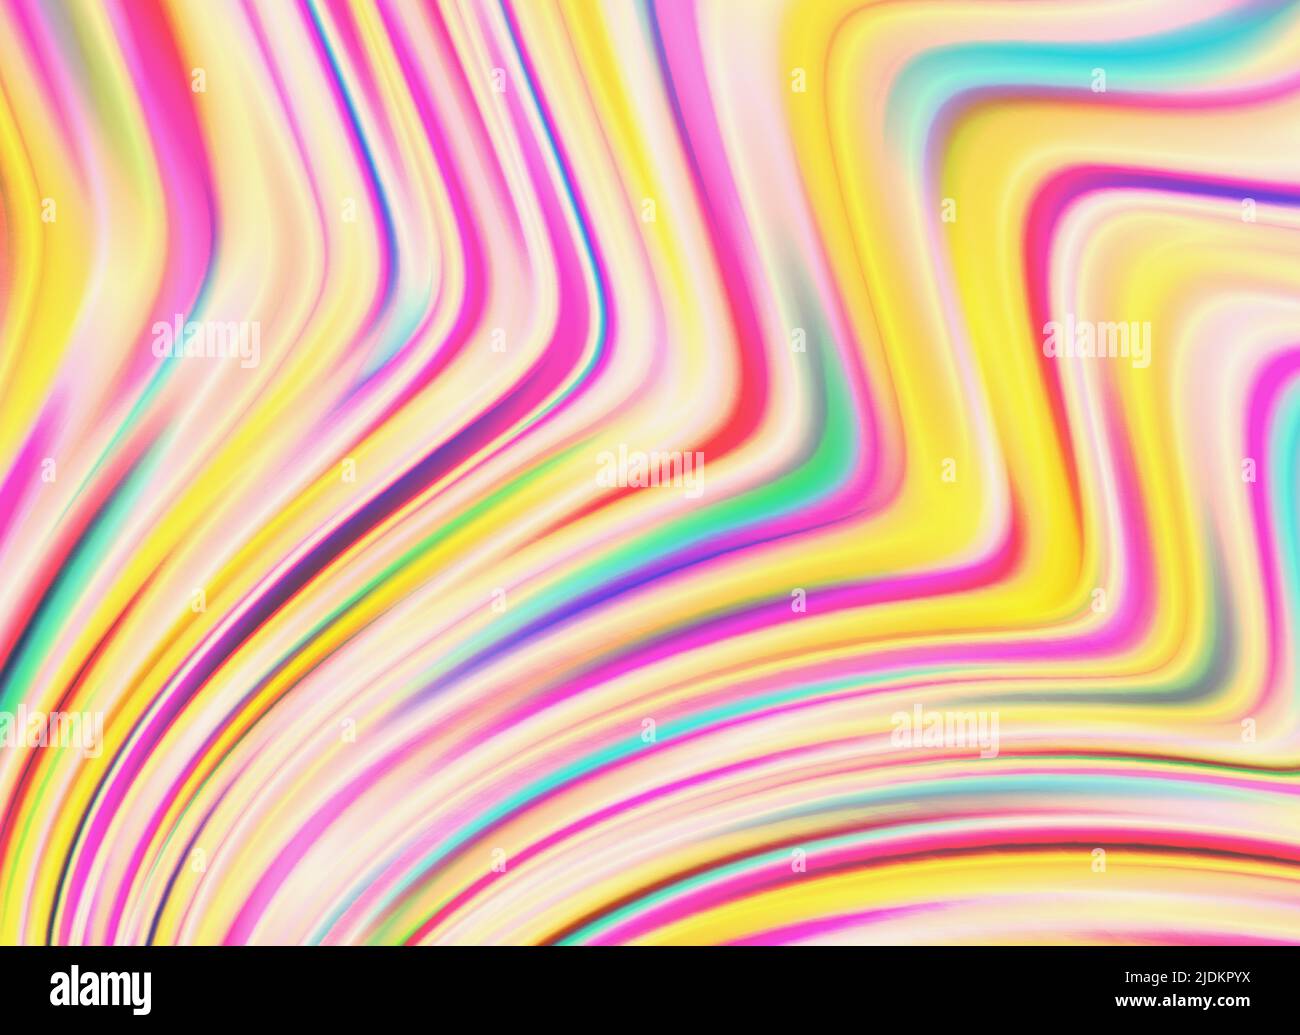 Hintergrund mit bunten chromatischen Wellen in hellen warmen Farben, Hologramm Folienmuster Stock Vektor